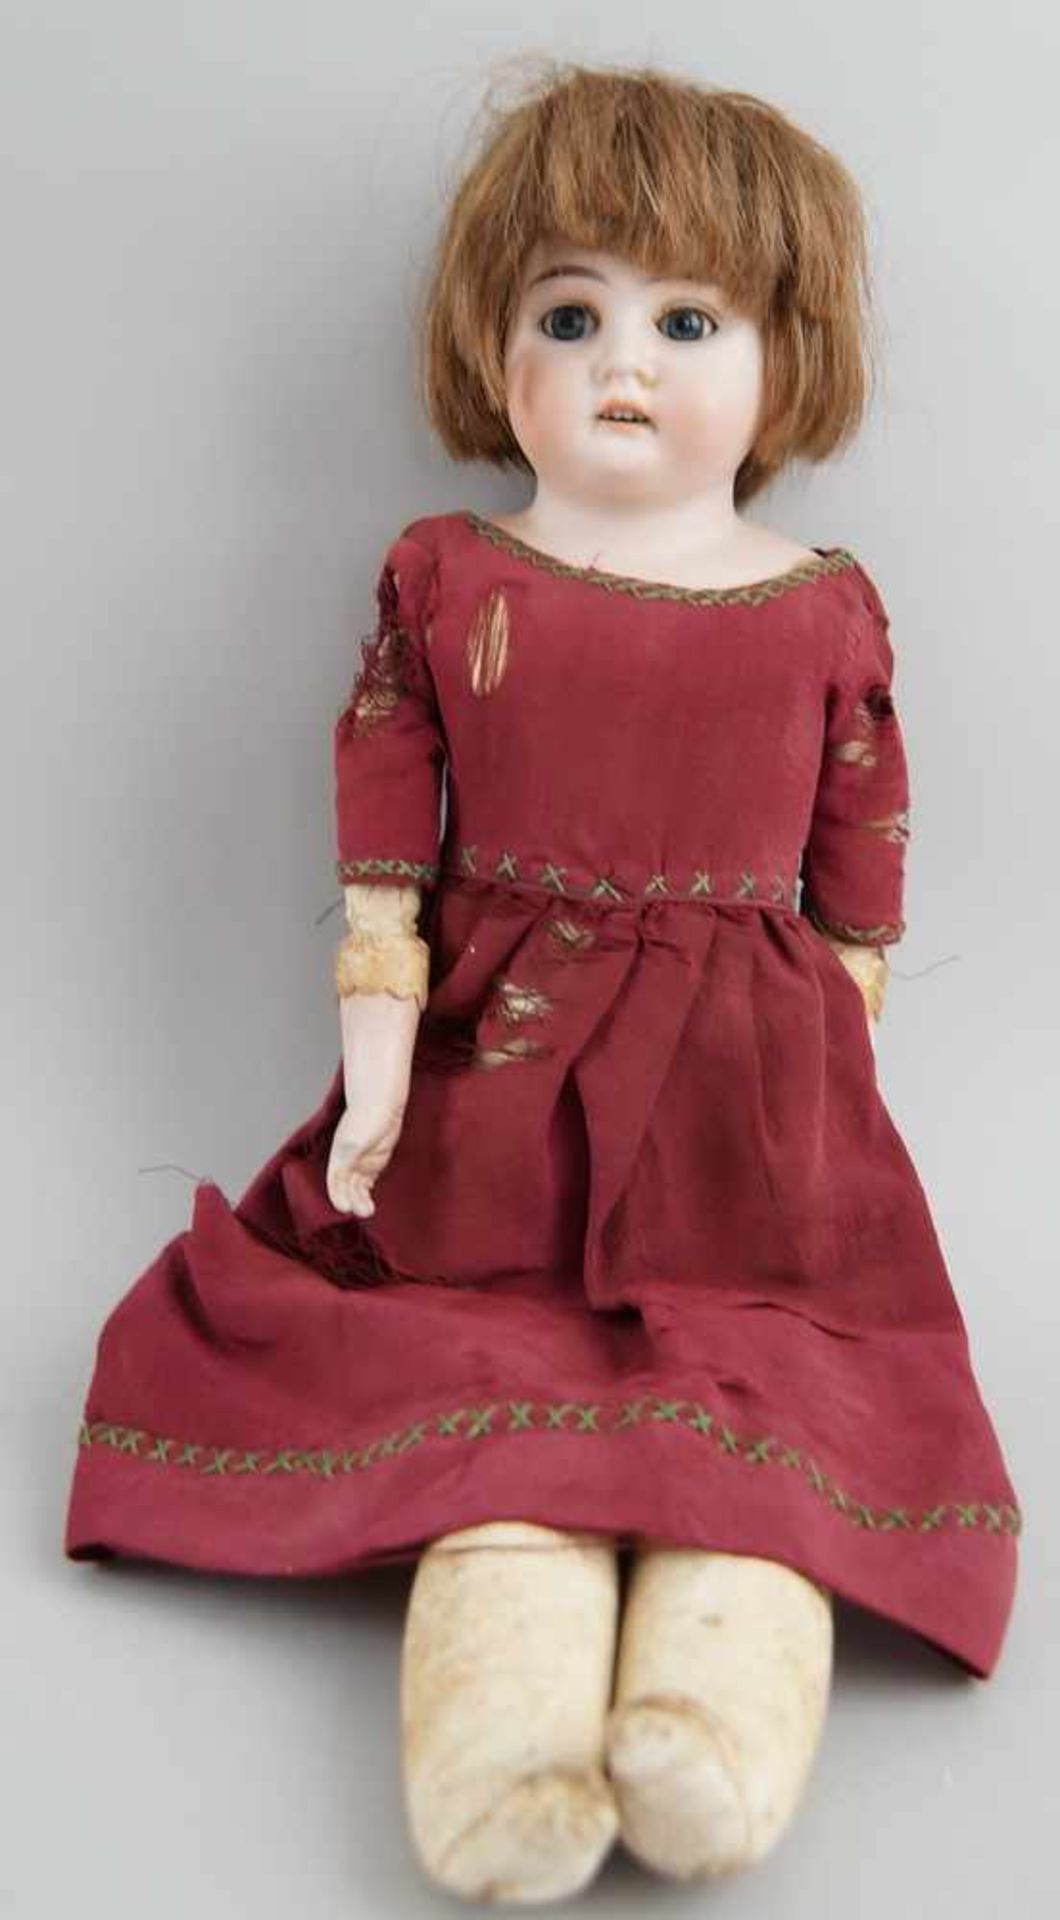 Puppe Armand Marseille 3200, 1896, bespielt, 39cm- - -24.00 % buyer's premium on the hammer